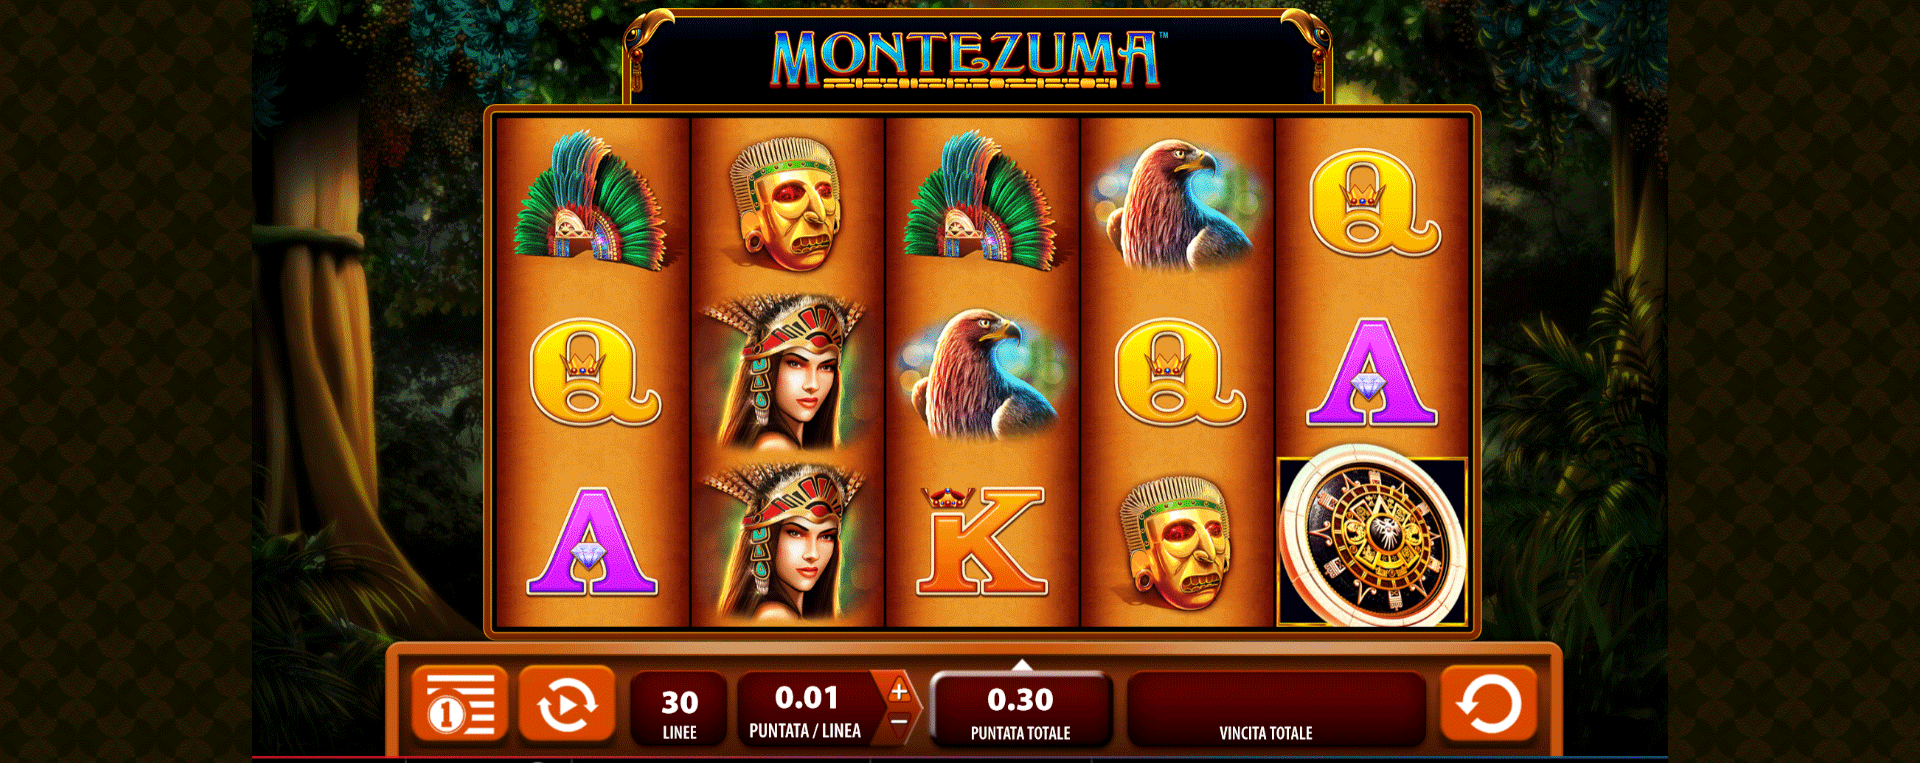 schermata di gioco della slot machine montezuma